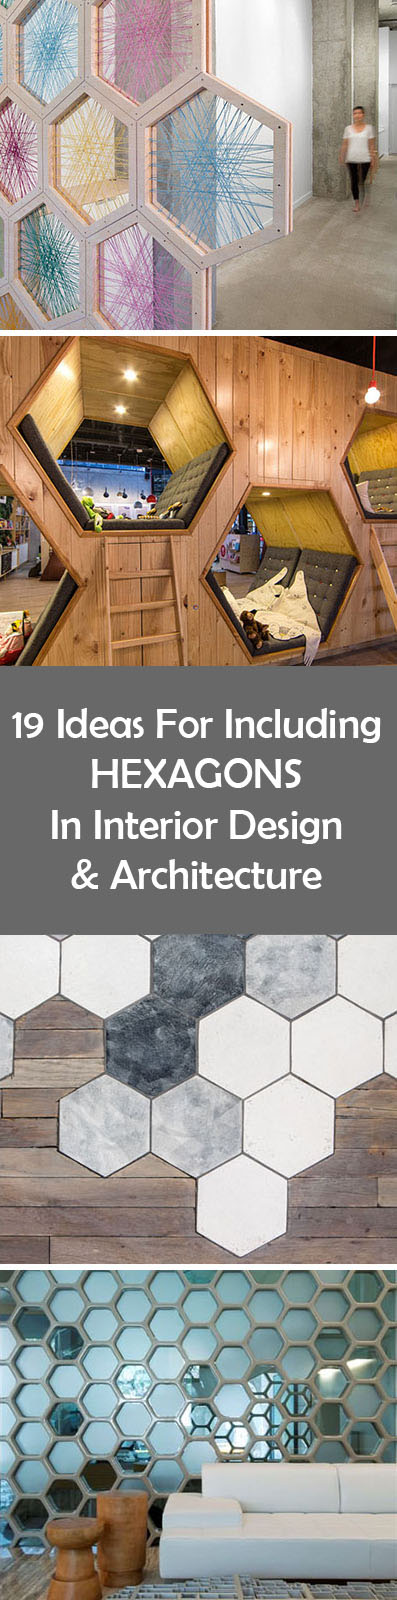 19 идей использования шестиугольников в дизайне интерьеров и архитектуре //